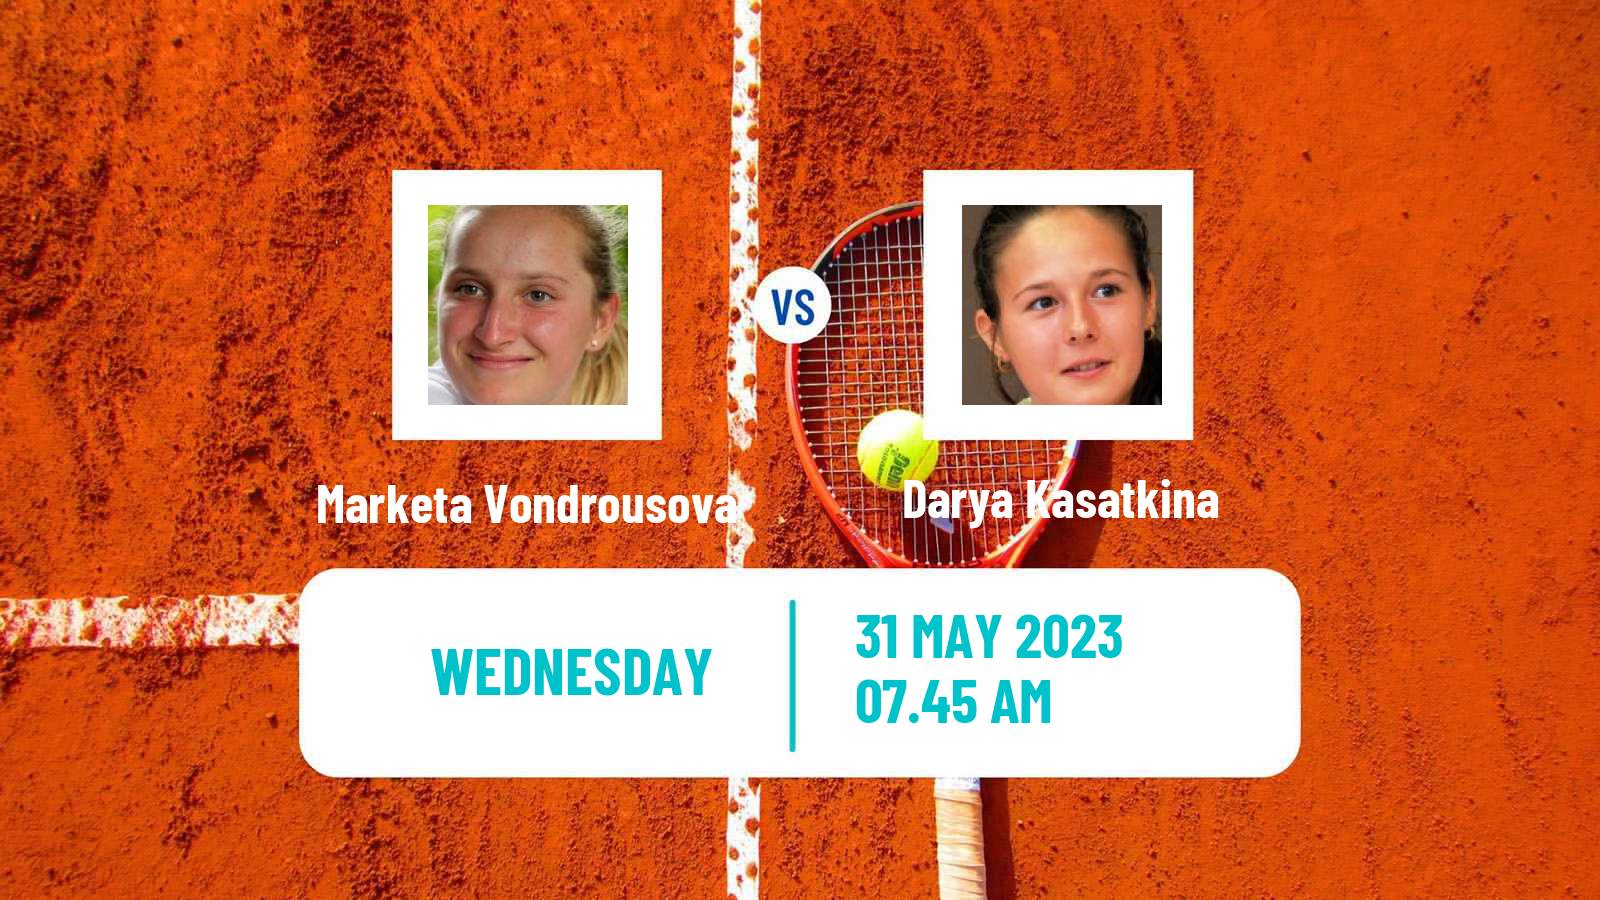 Tennis WTA Roland Garros Marketa Vondrousova - Darya Kasatkina